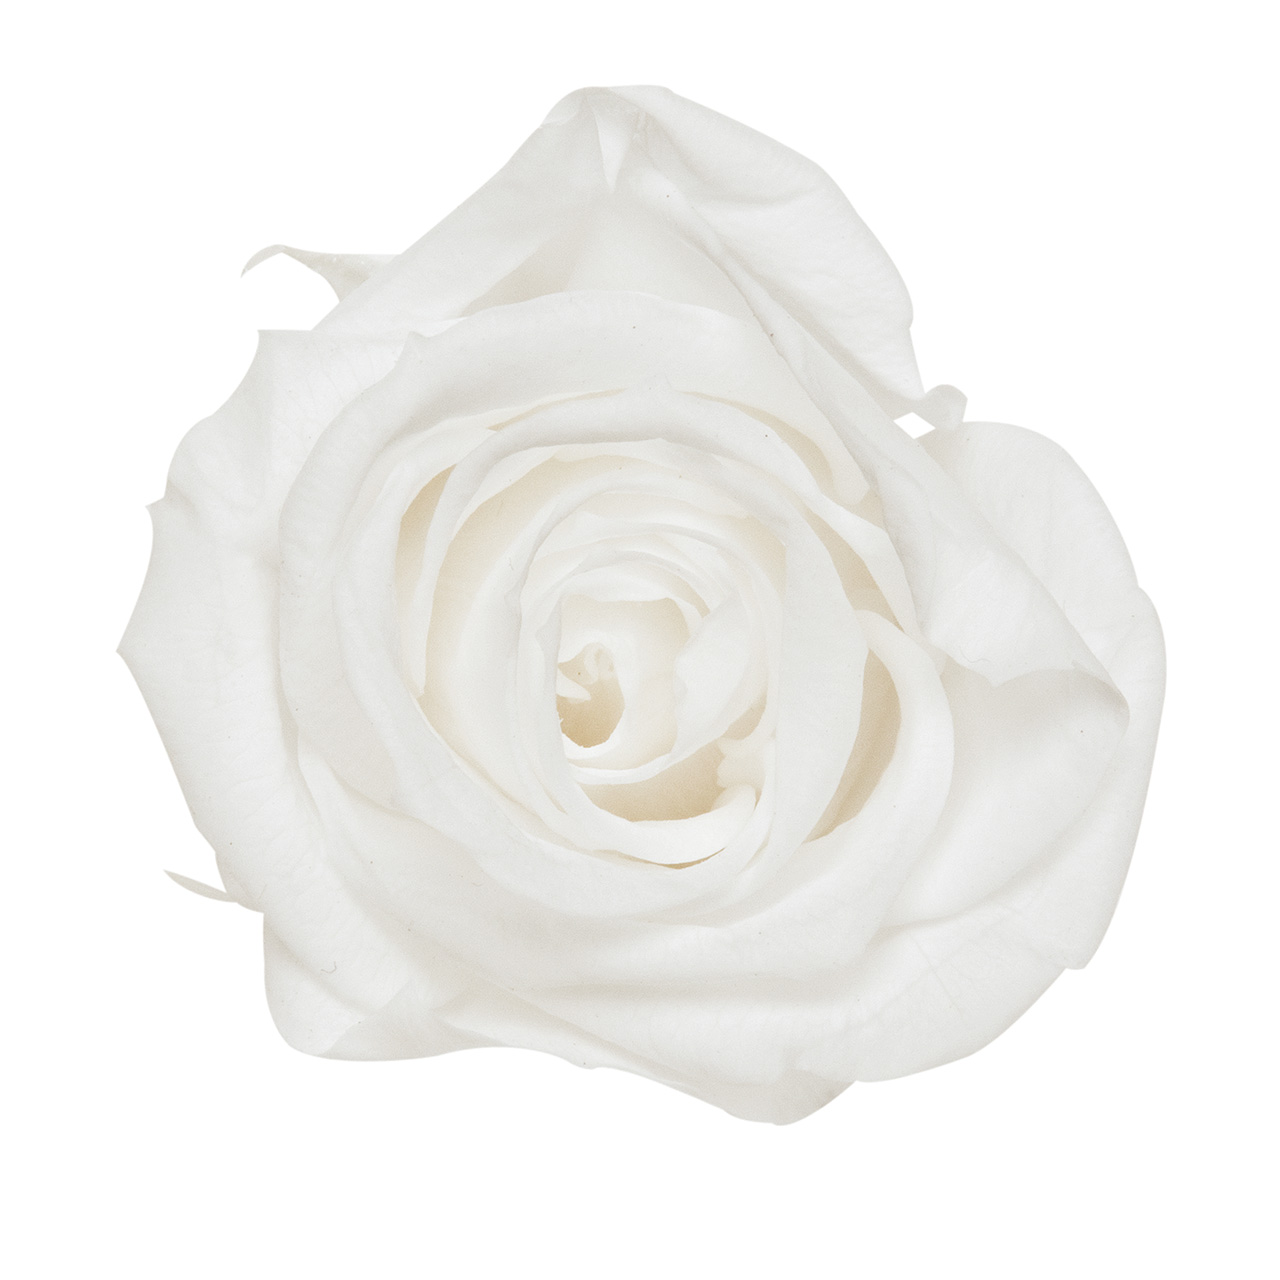 マイフラ 通販 プリンセス ホワイト プリザーブドフラワー Vd 001 16輪入 ローズ バラ ホワイト プリザーブドフラワー 全国にmagiq 花器 花資材などをお届けします